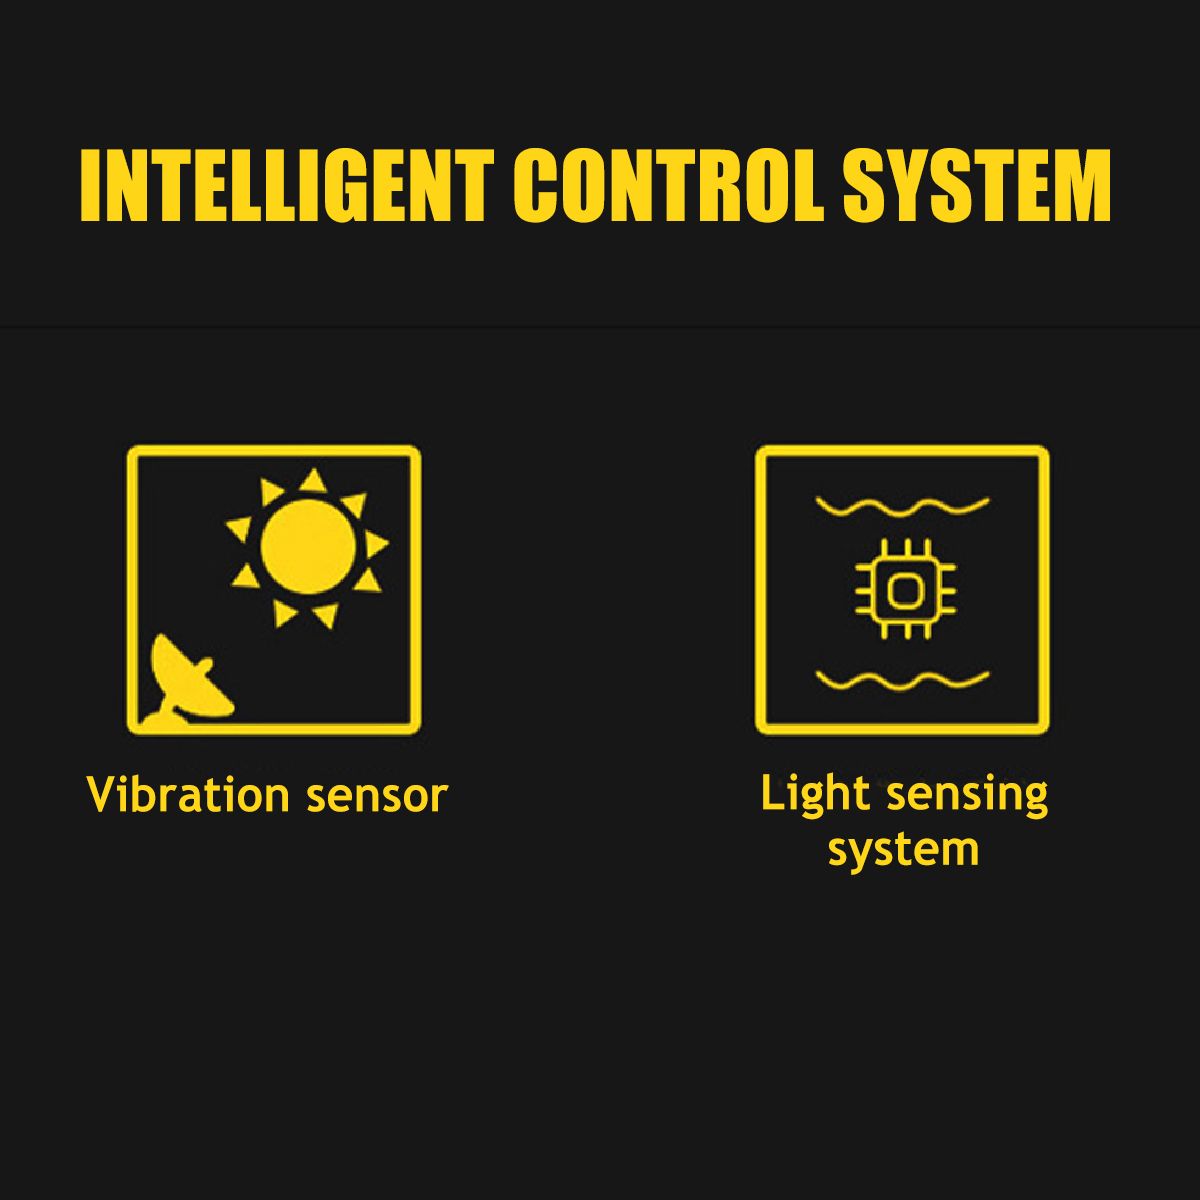 Car-LED-RGB-16-Color-Solar-Remote-Control-Warning-Emergency-Strobe-Light--Anti-tailing-12V-8W-1605079